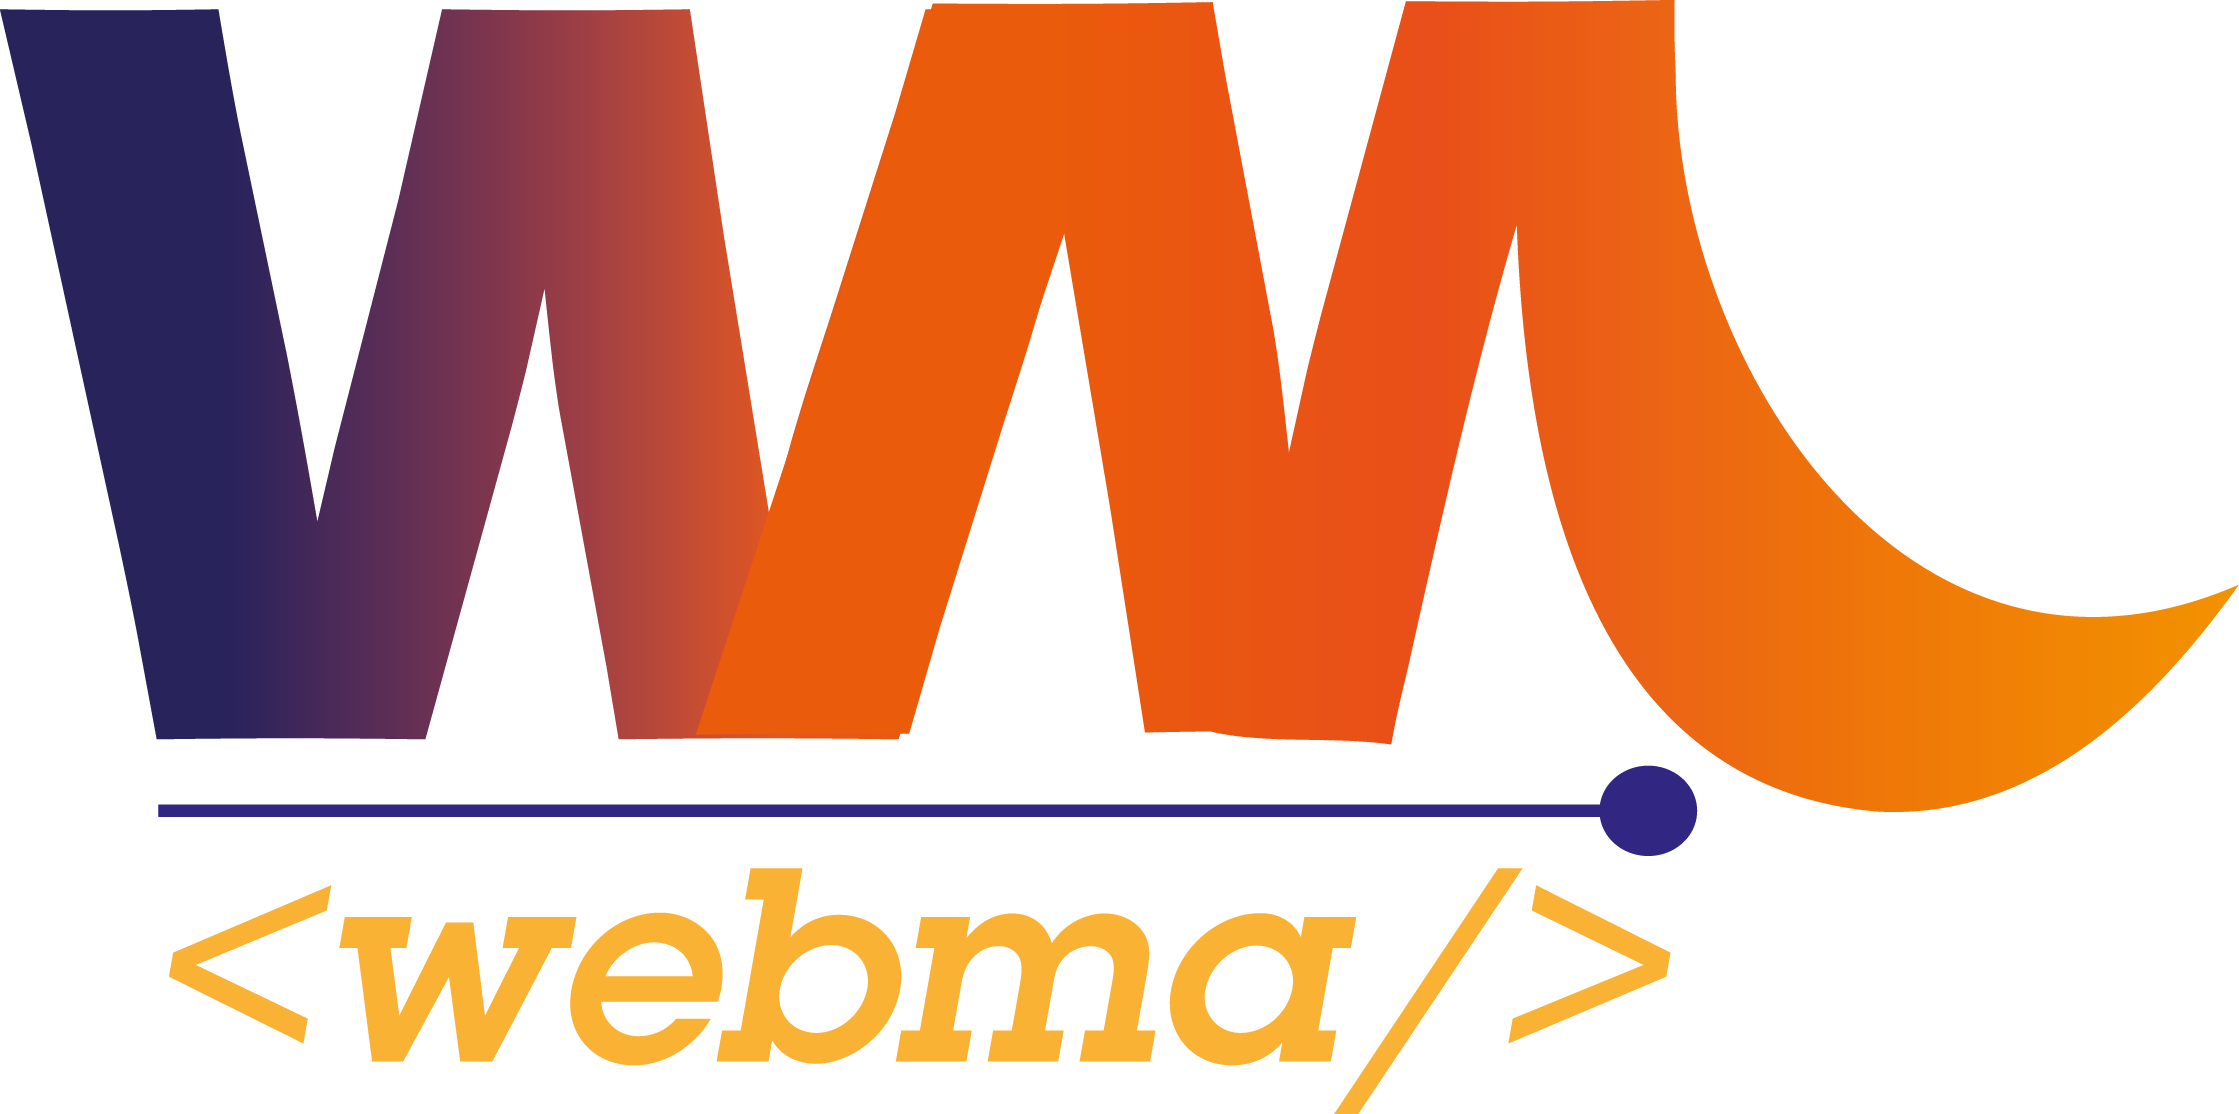 Desarrollo Web, Marketing Digital y Diseño - WebMa